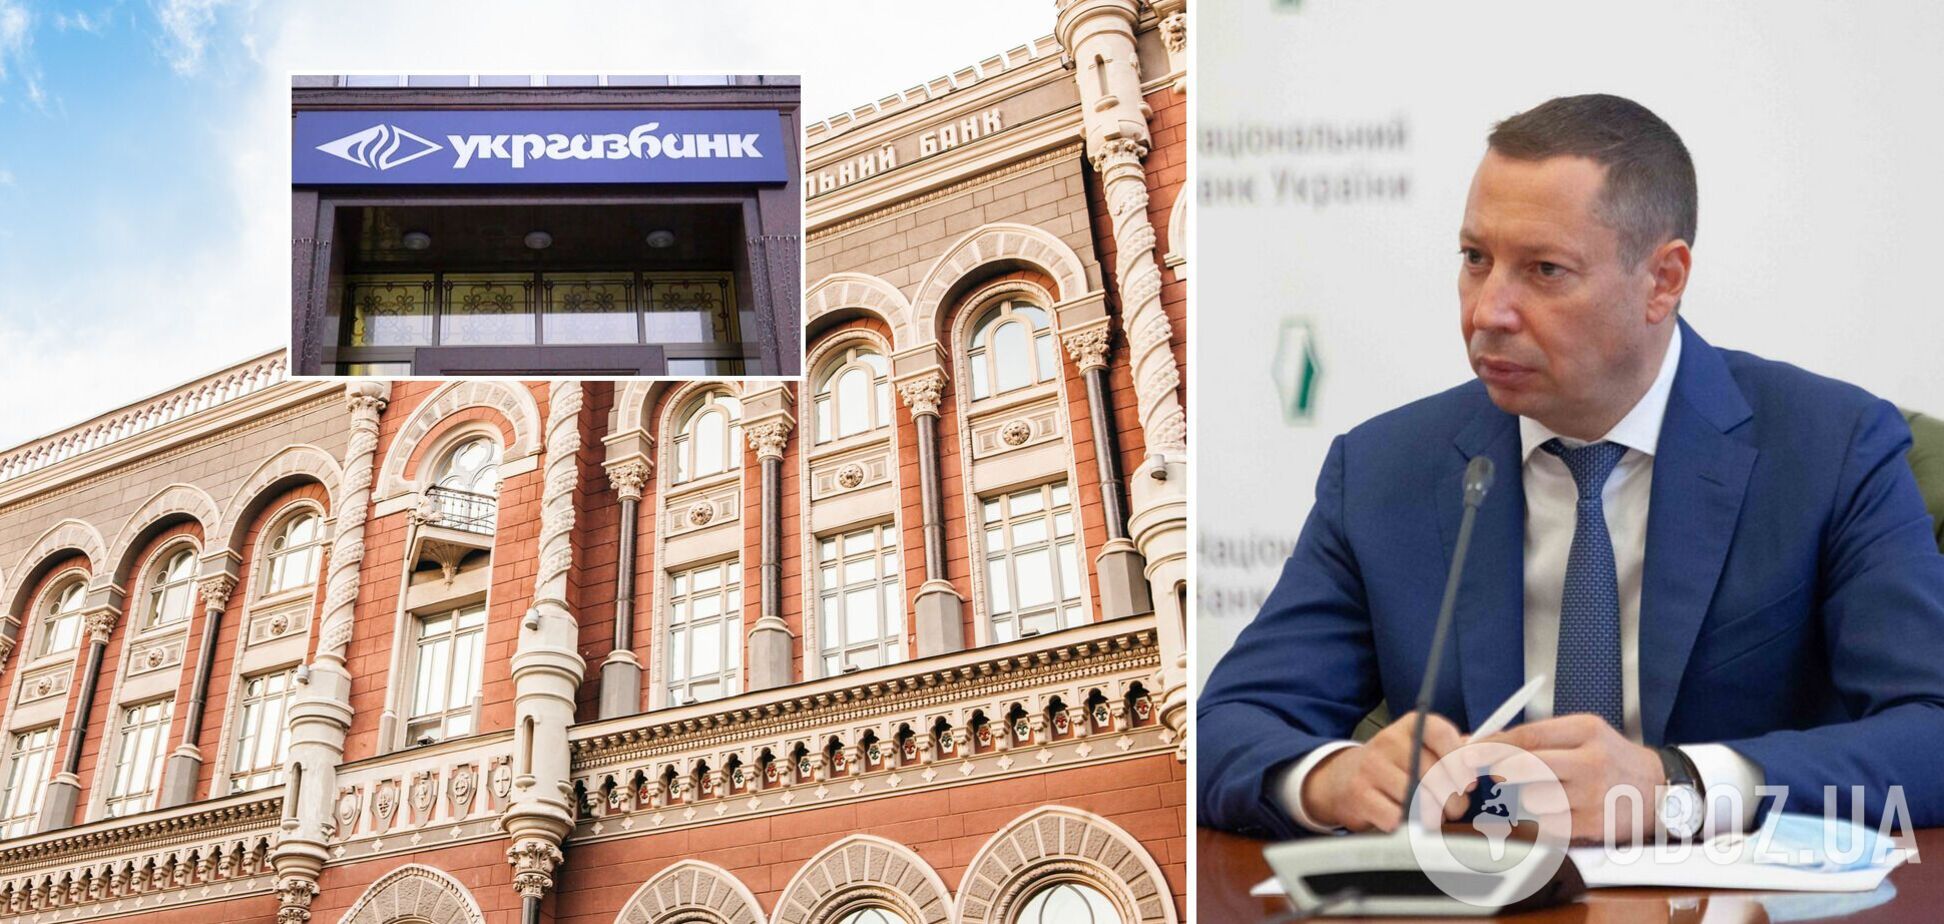 Глава НБУ Кирилл Шевченко напомнил о подготовке Укргазбанка к приватизации